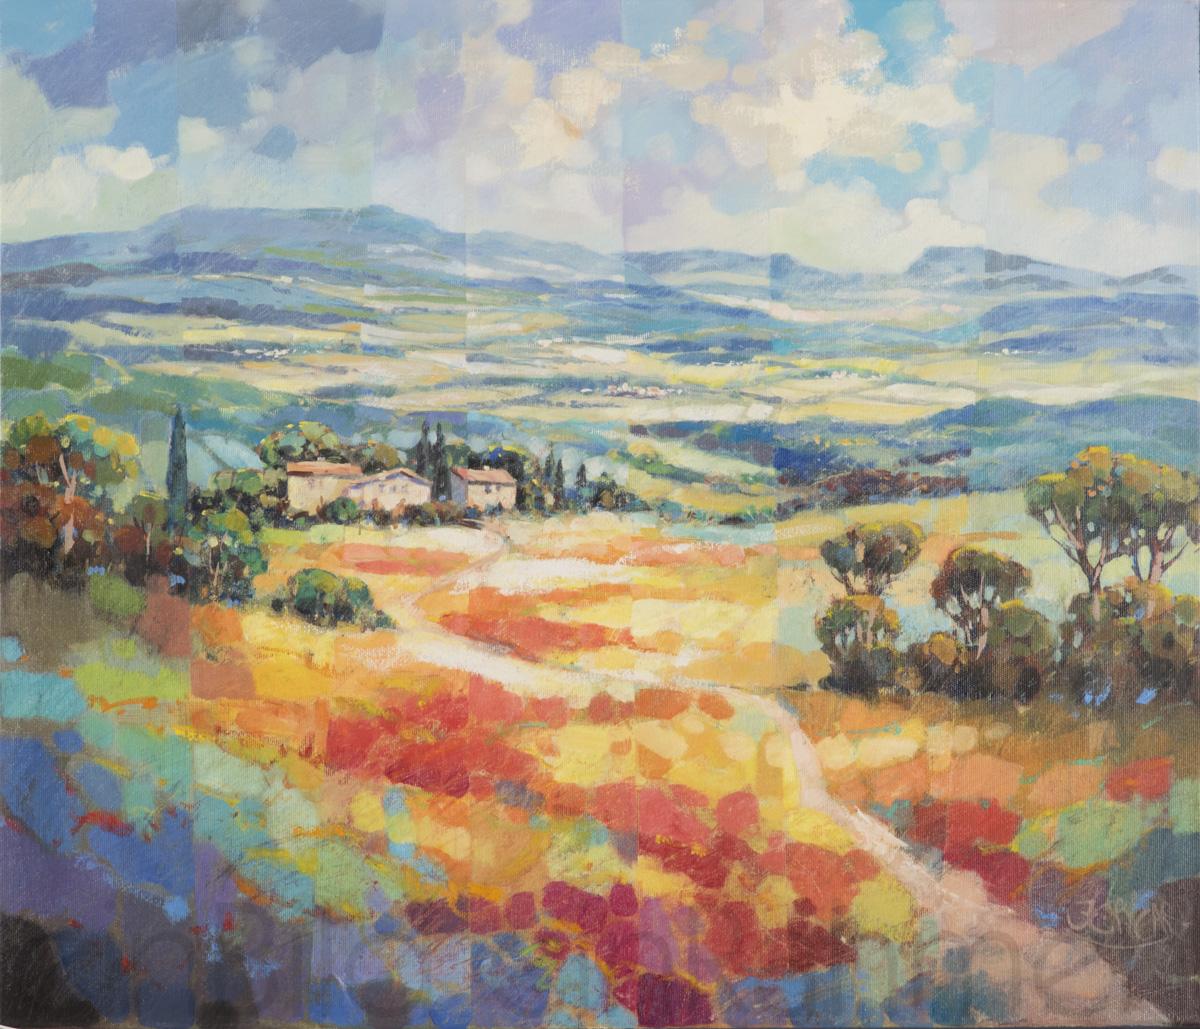 Ein Landschaftsbild des Künstlers Jean-Claude Picard als Mischtechnik aus Öl farben und Kreide auf Leinwand